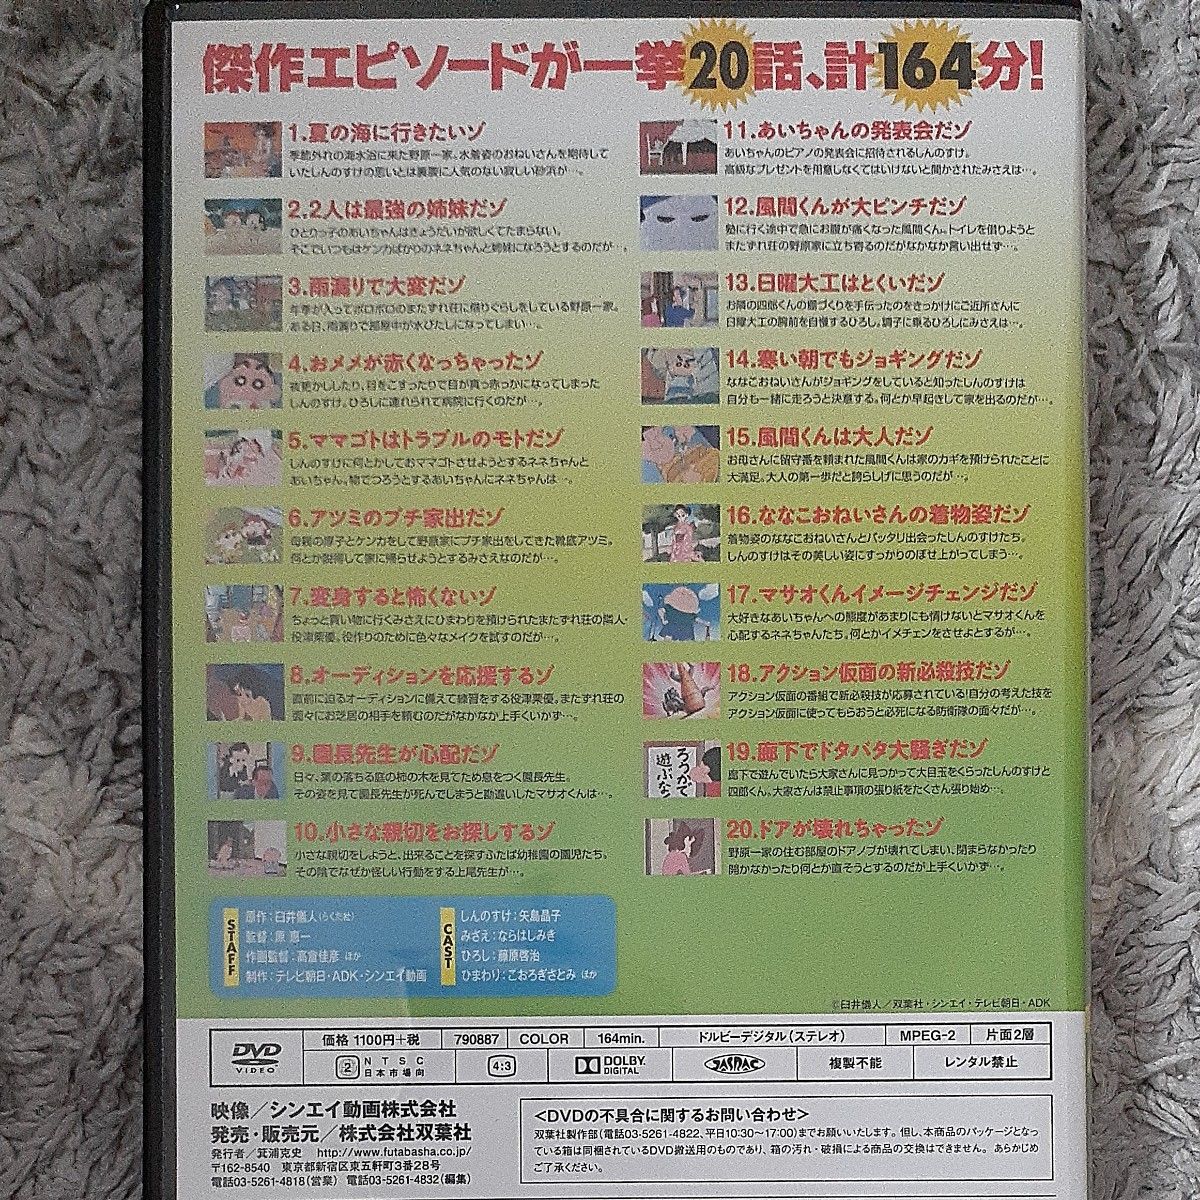 クレヨンしんちゃん DVD